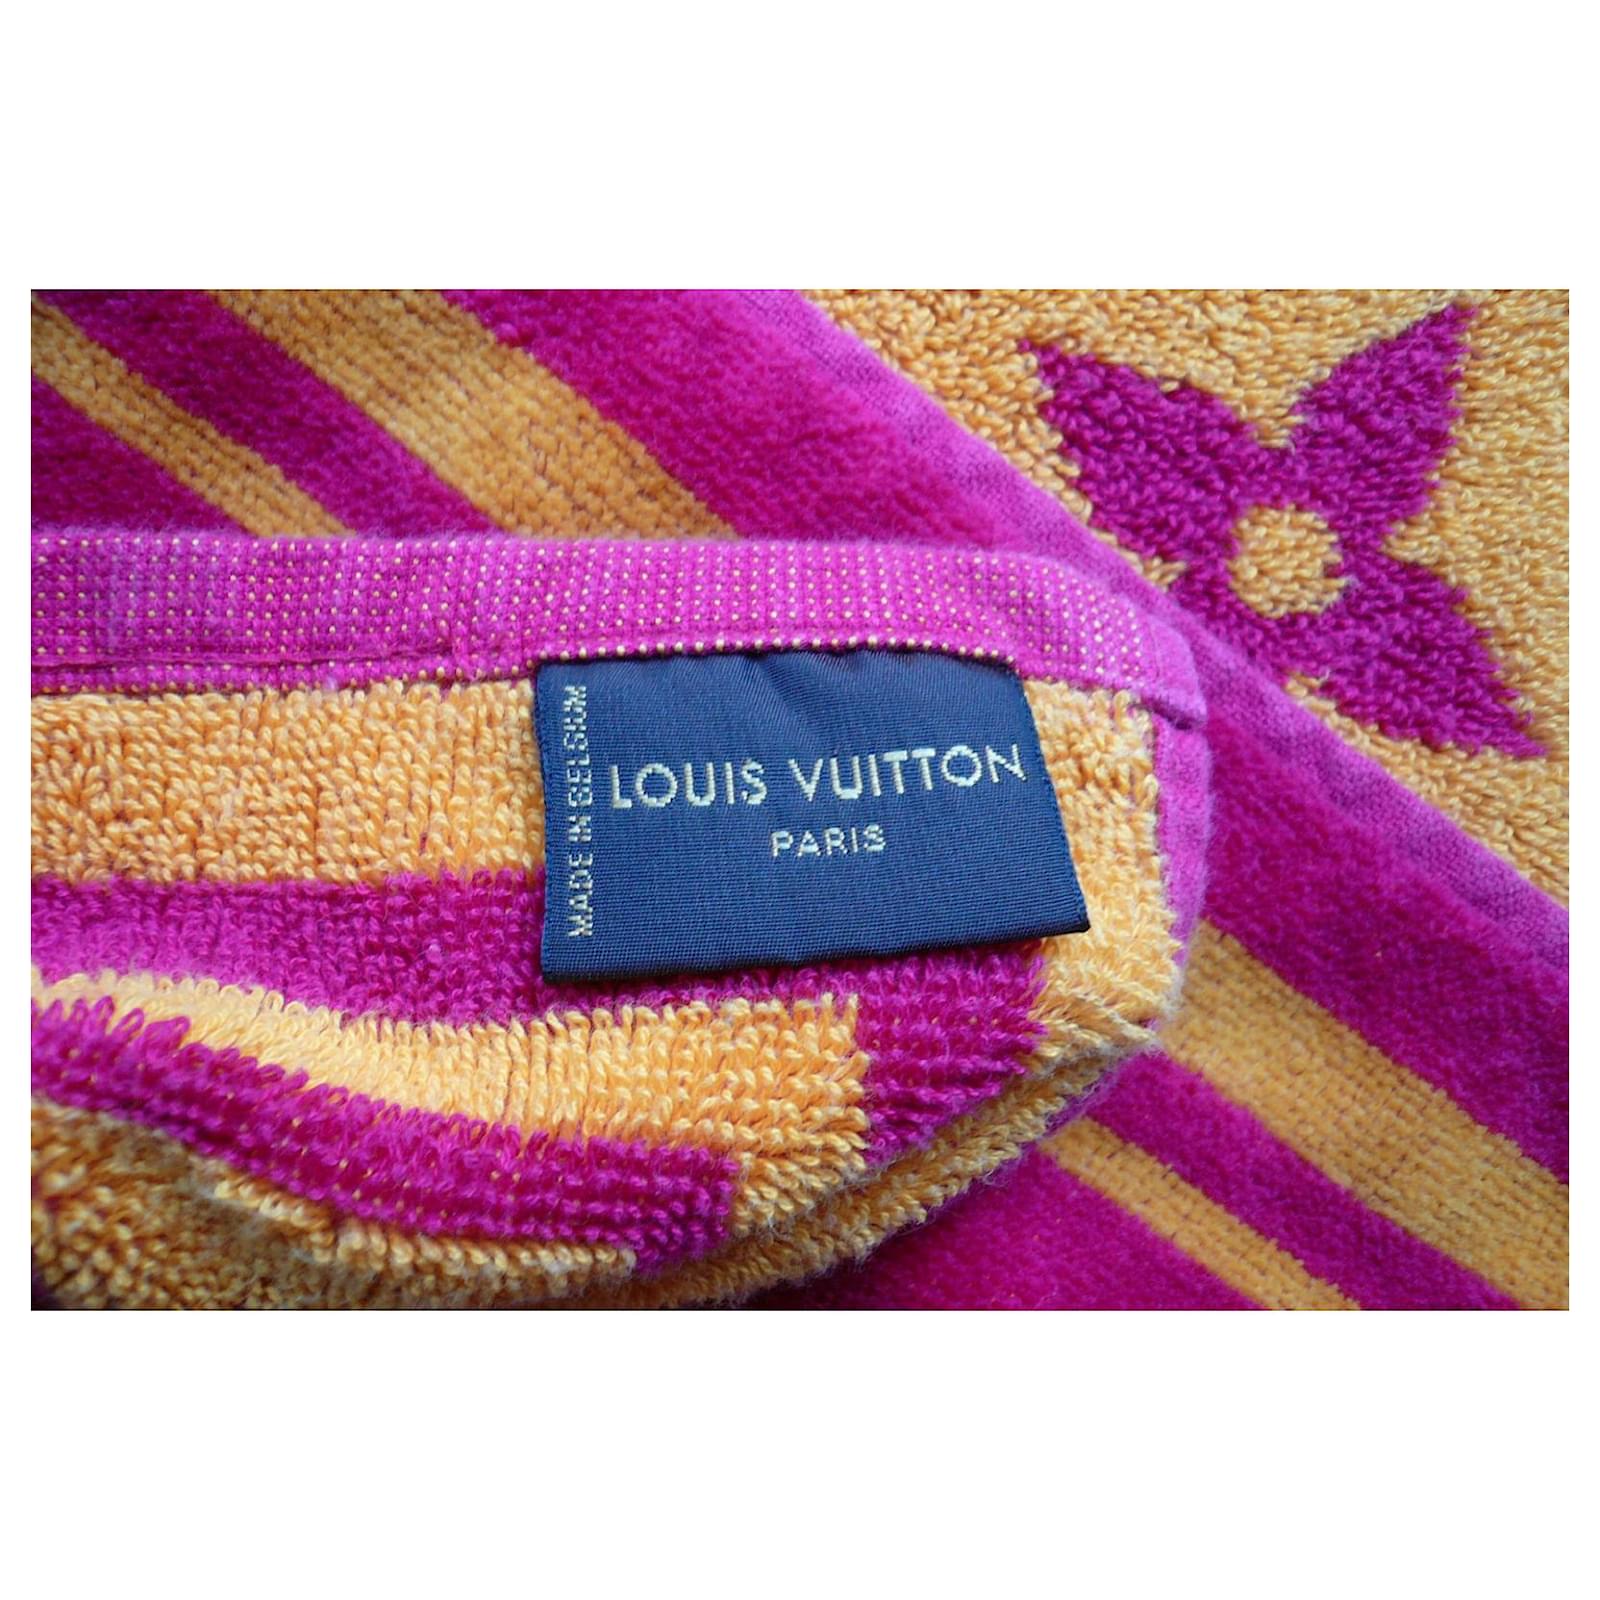 LOUIS VUITTON Beach towel MONOGRAM NEW CONDITION Multiple colors